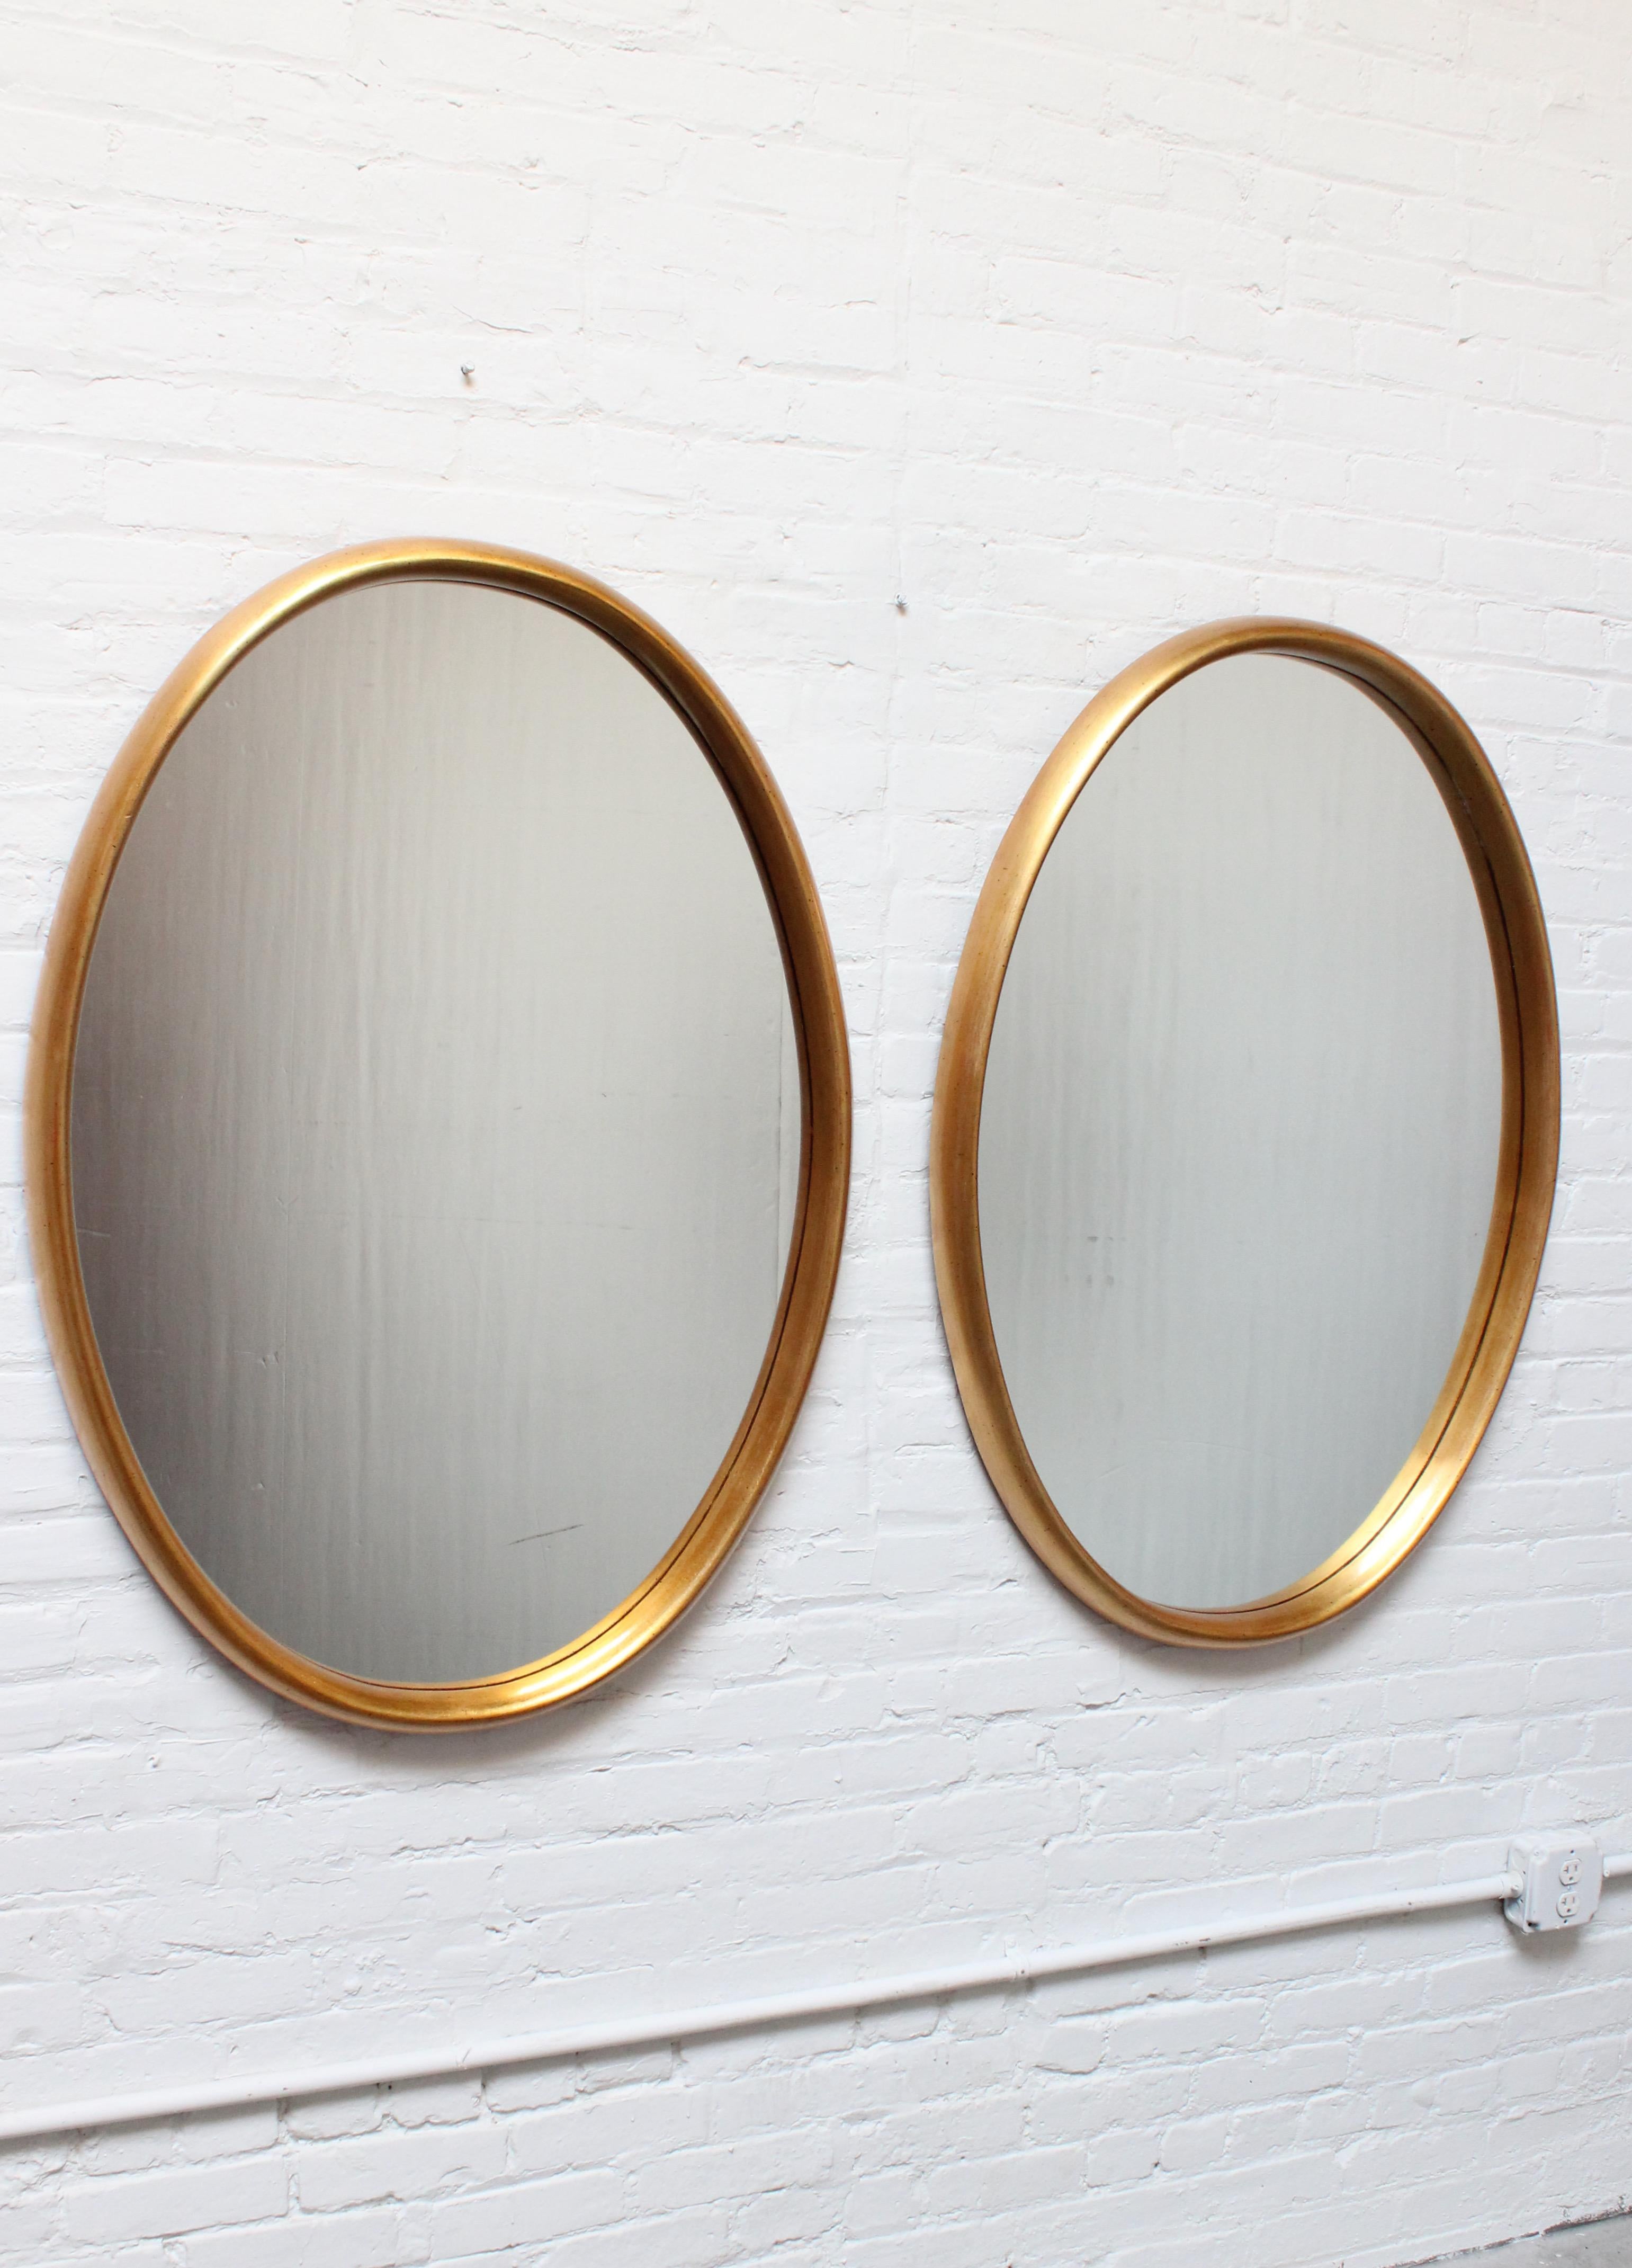 Paire de larges miroirs Labarge de forme ovale, composés de verre inséré dans des cadres profonds en feuille d'or. Le verre présente une usure mineure (notamment une légère et longue éraflure sur le verre du miroir droit, comme le montre la dernière